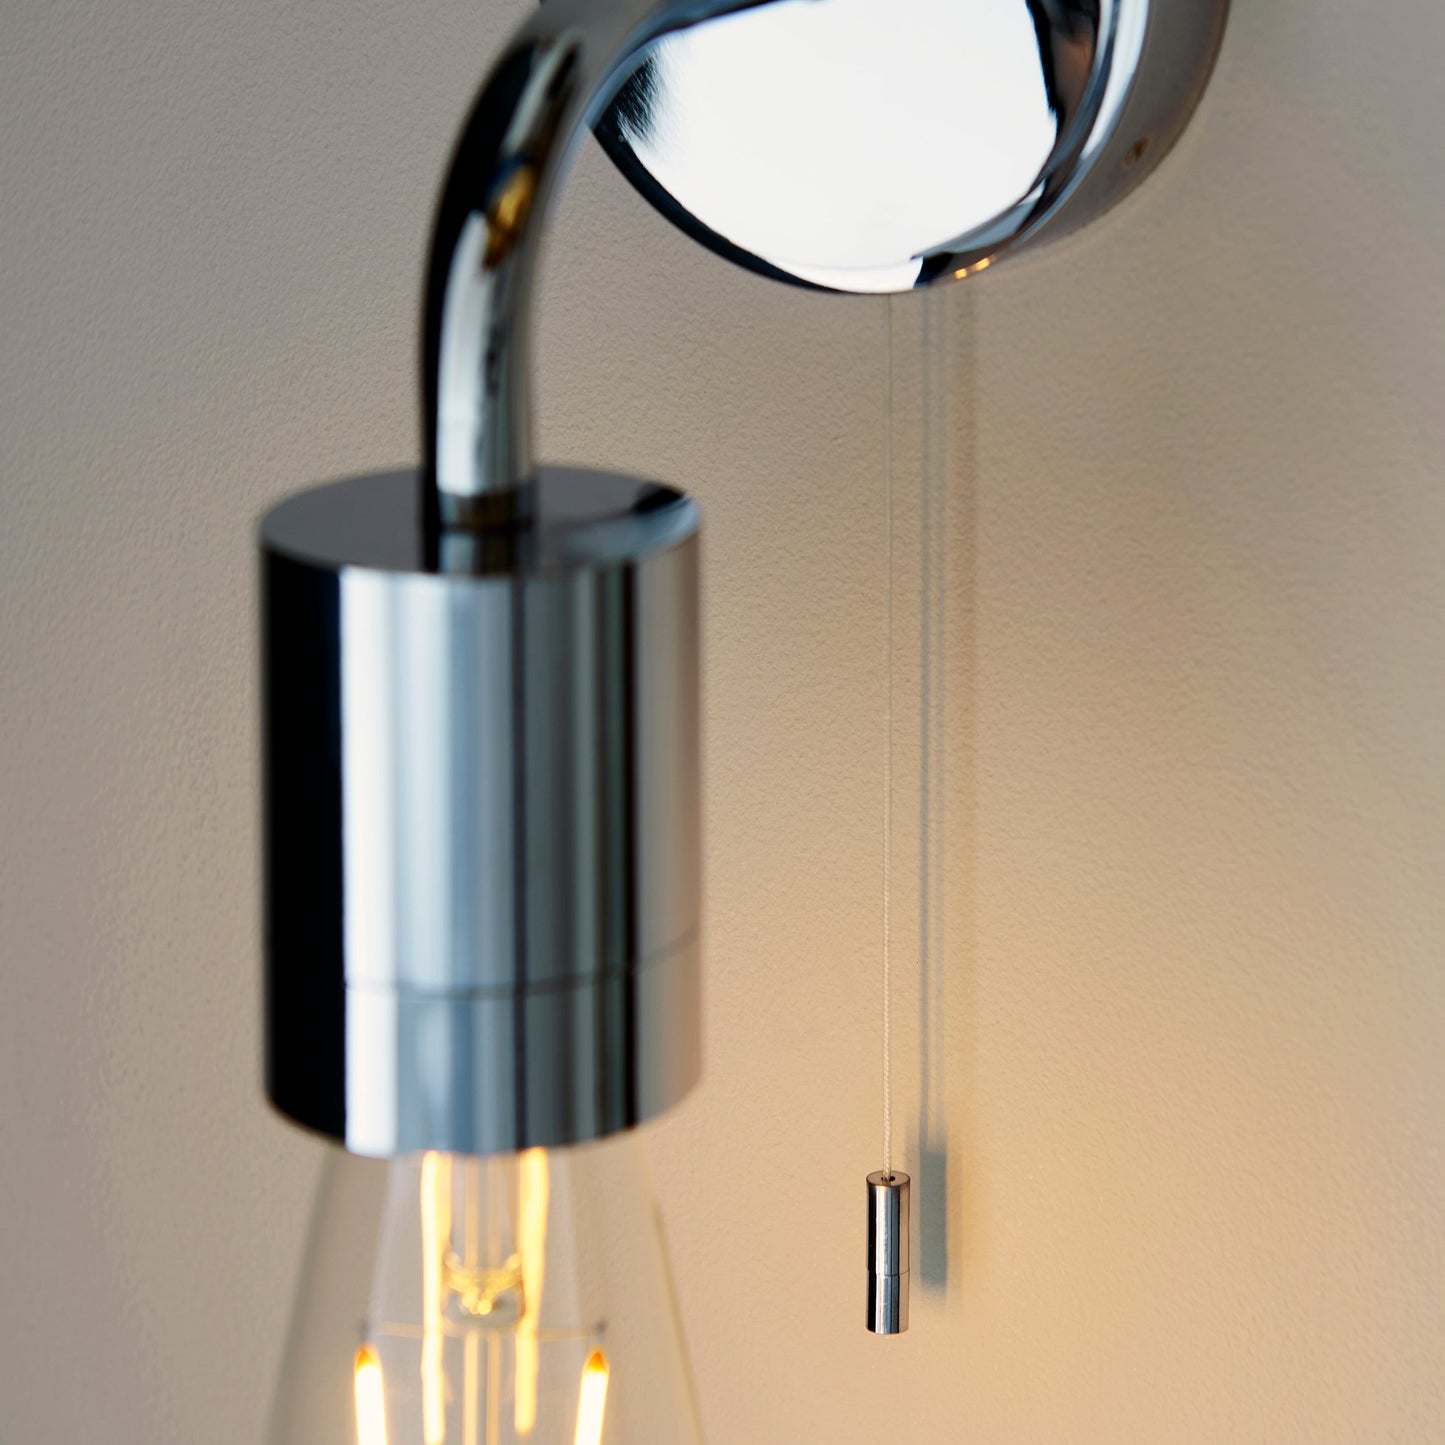 Polished Chrome Sleek One Lamp Bathroom Wall Light - ID 11650